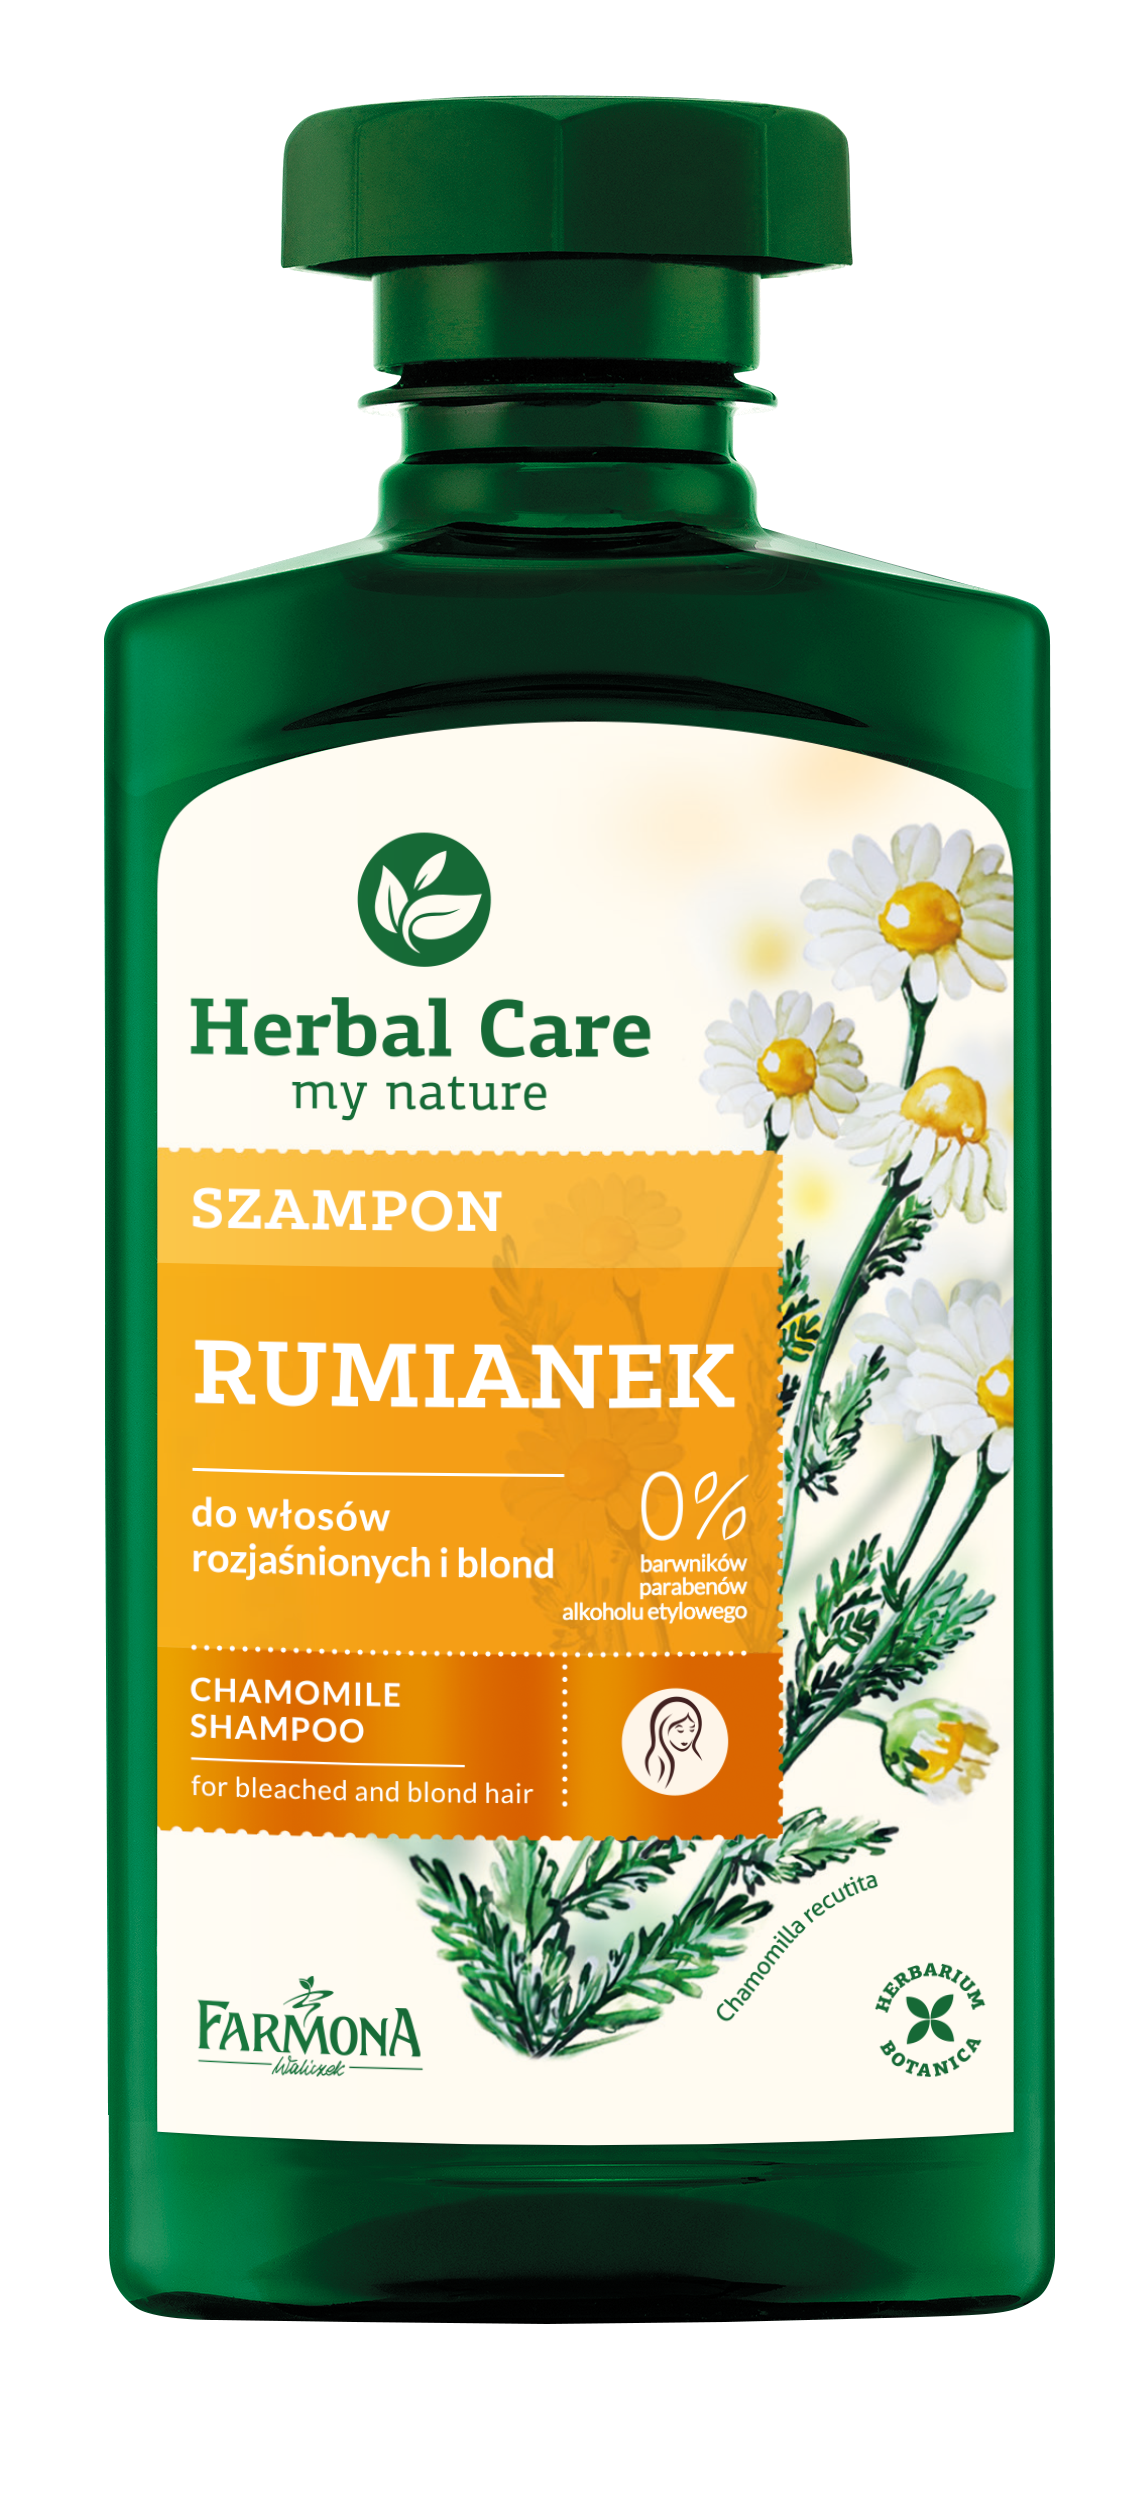 Farmona_Herbal_Care_Szampony_RUMIANEK